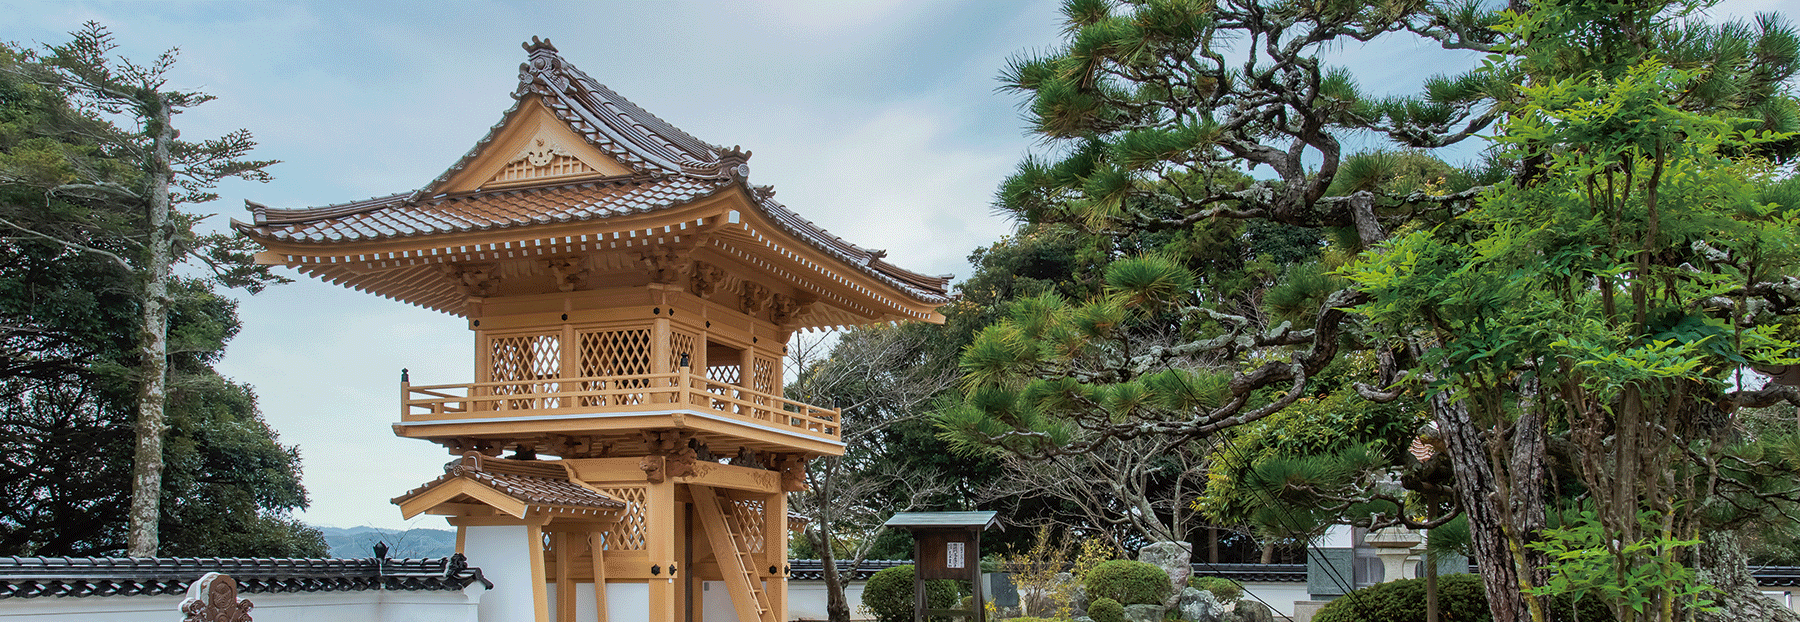 鳥取県 大山寺